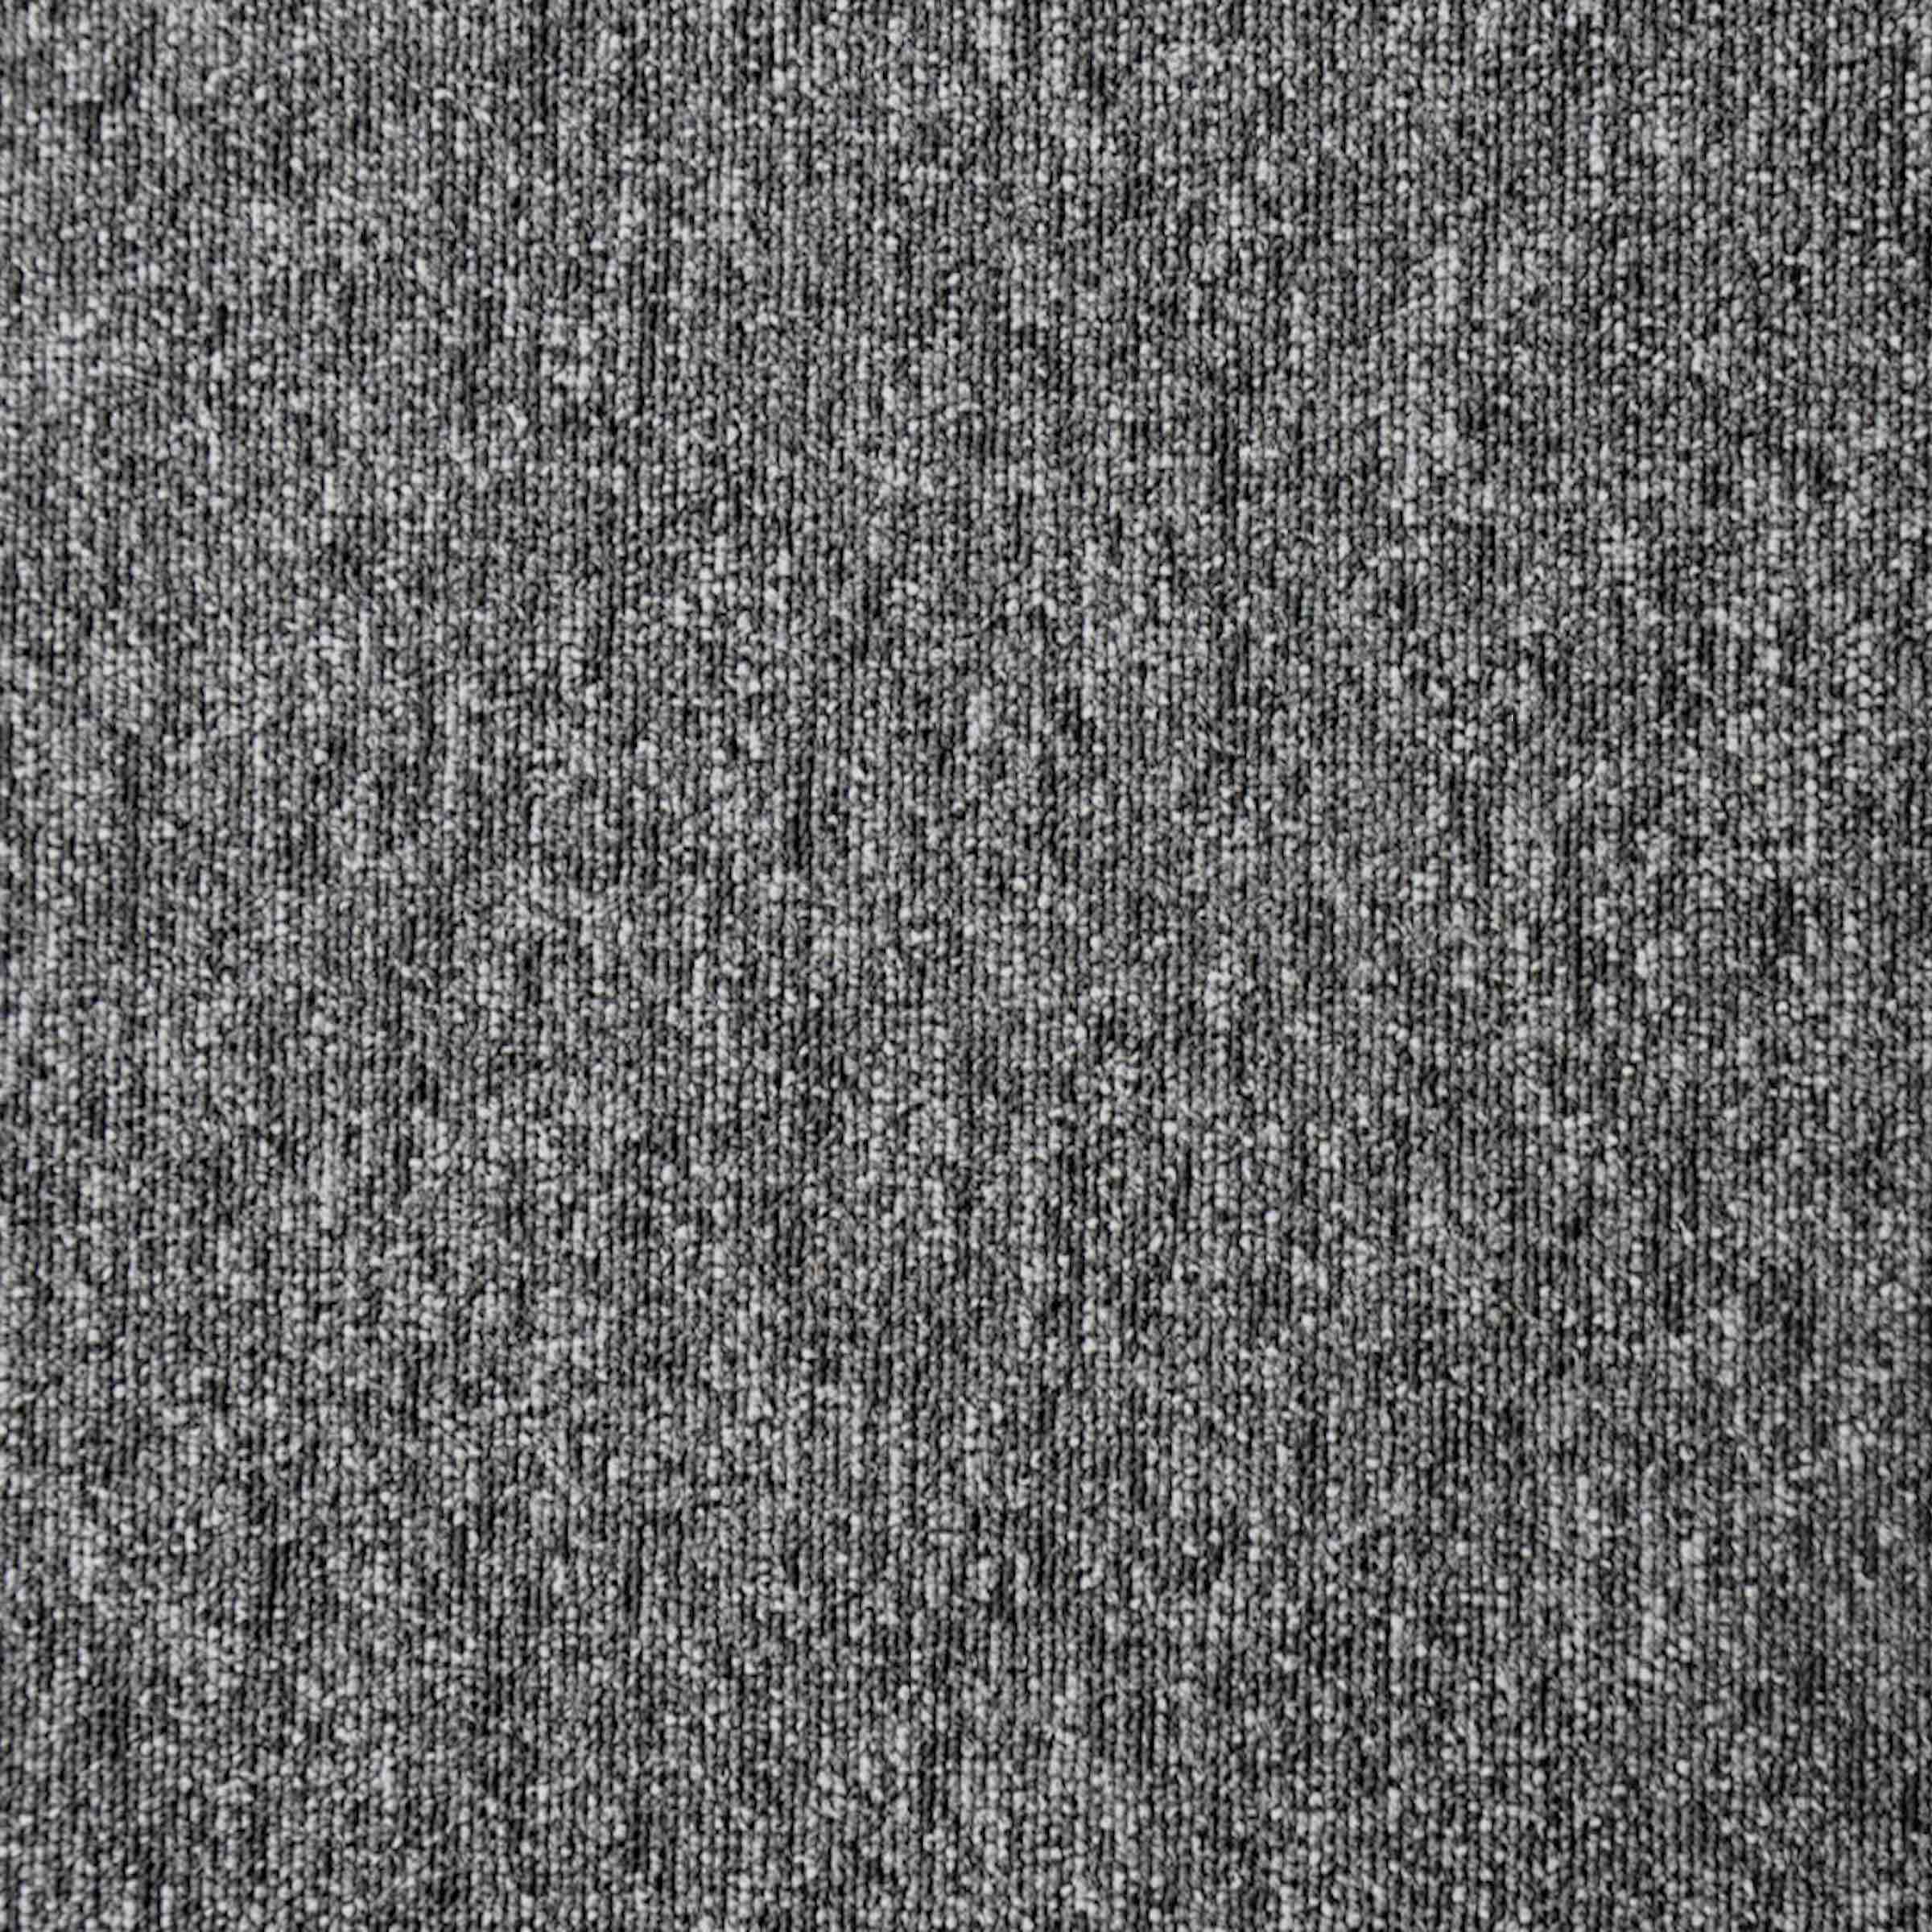 Diversity | Lupus Grey, 811 | Paragon Carpet Tiles | Commercial Carpet Tiles